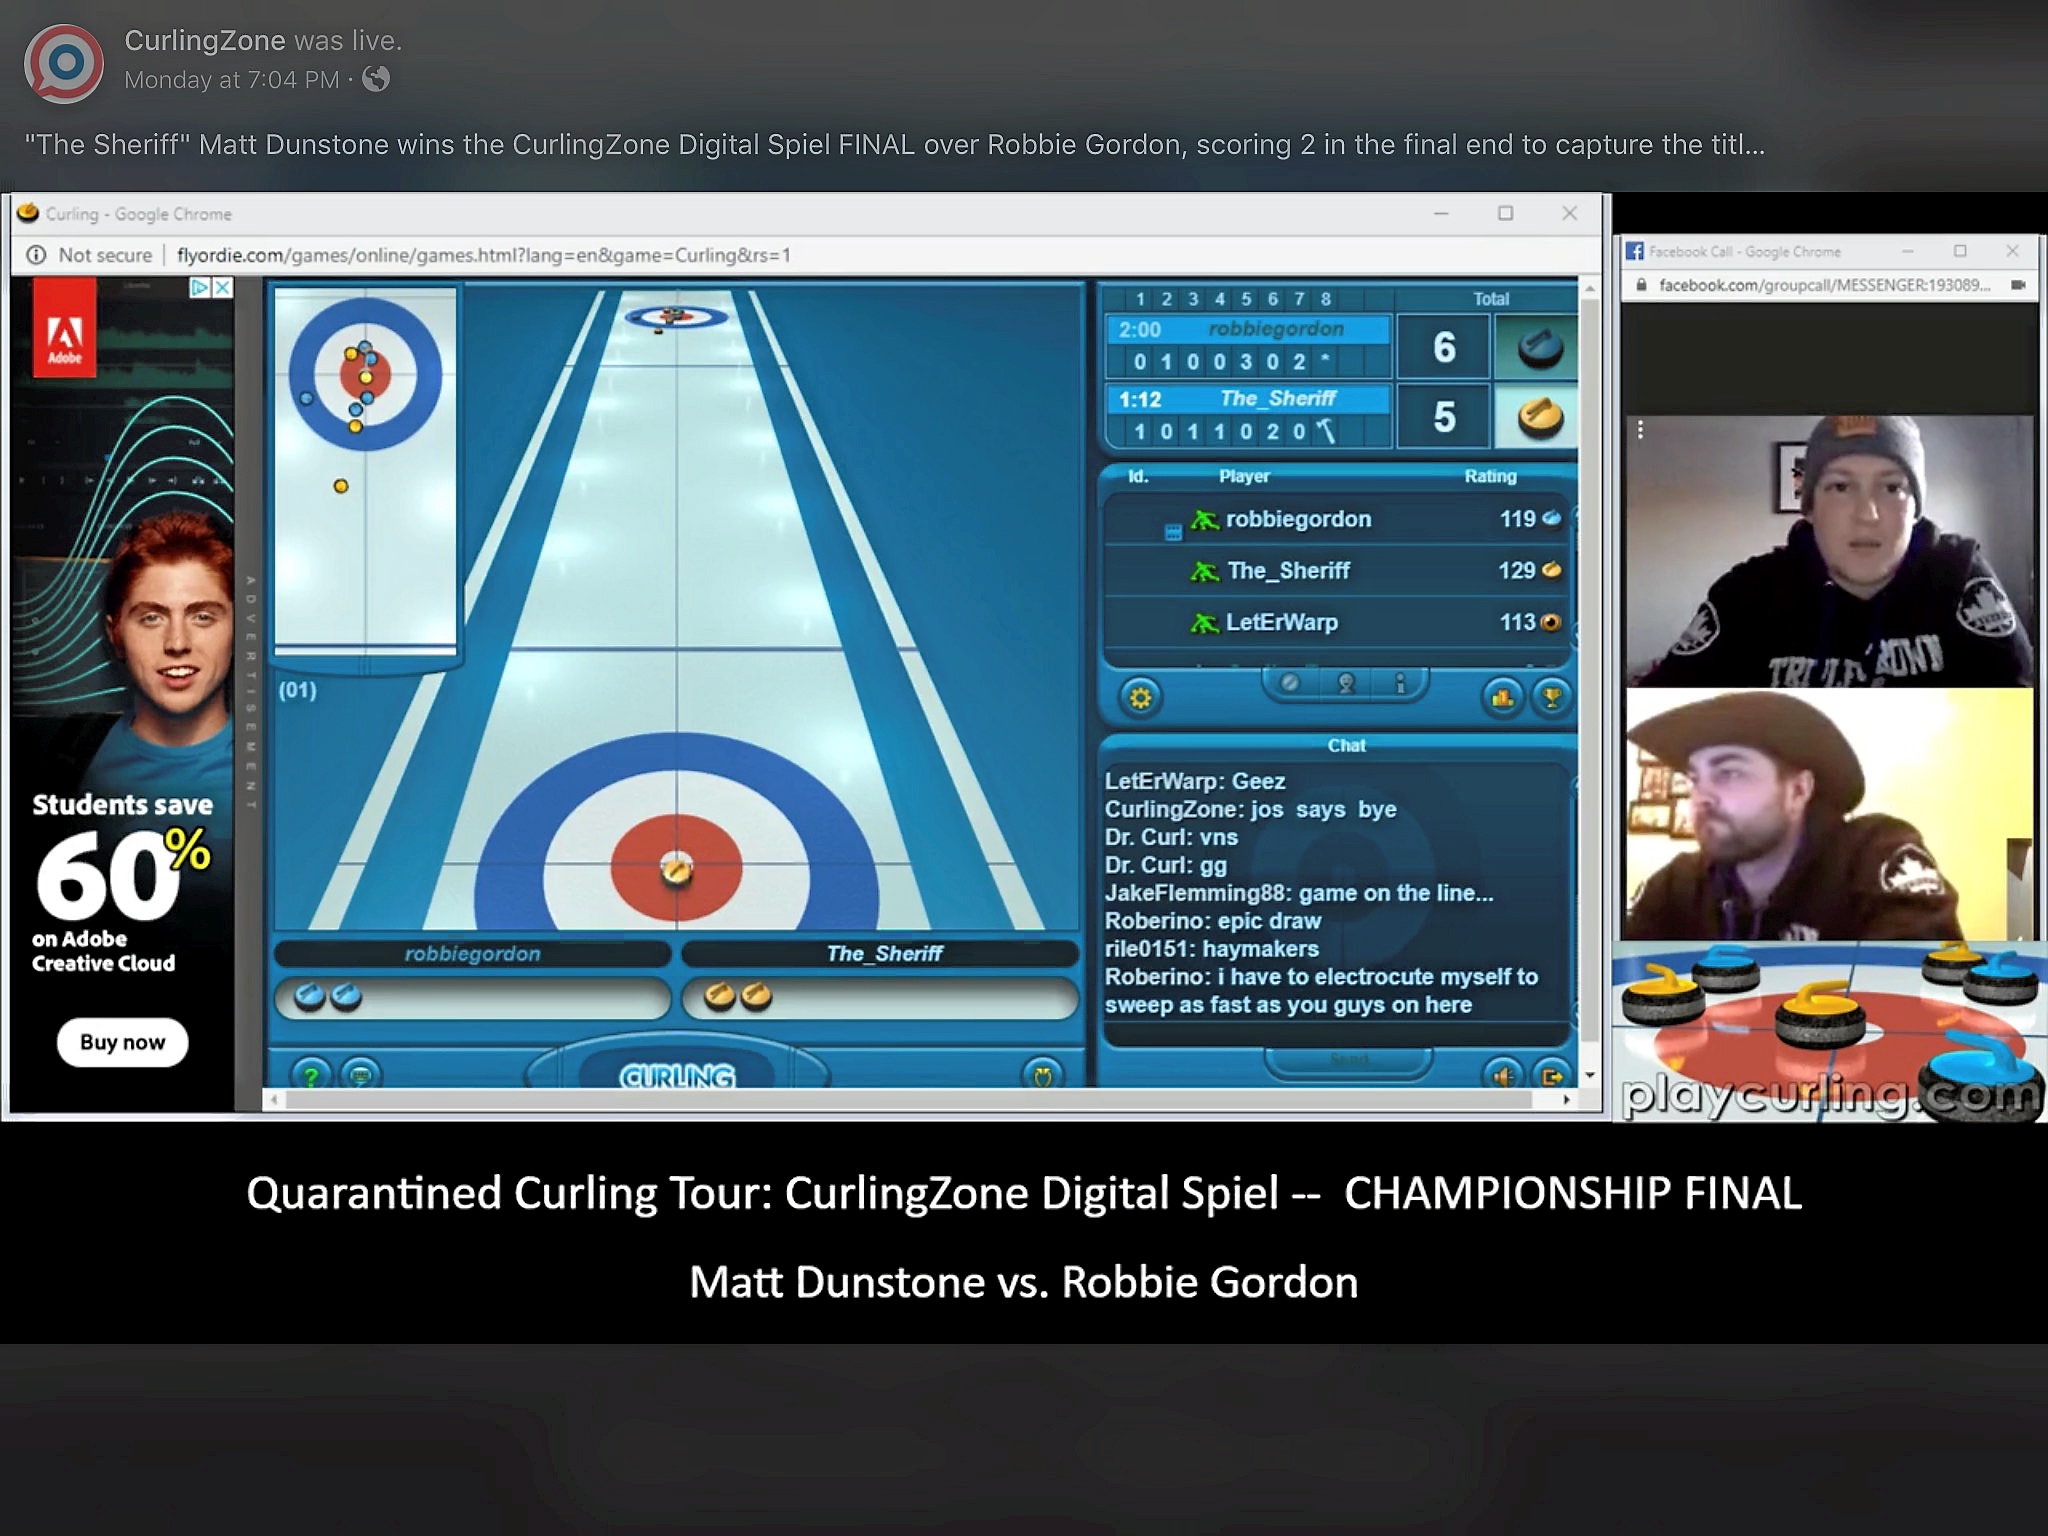 COVID-19 oblige, le curling passe au virtuel